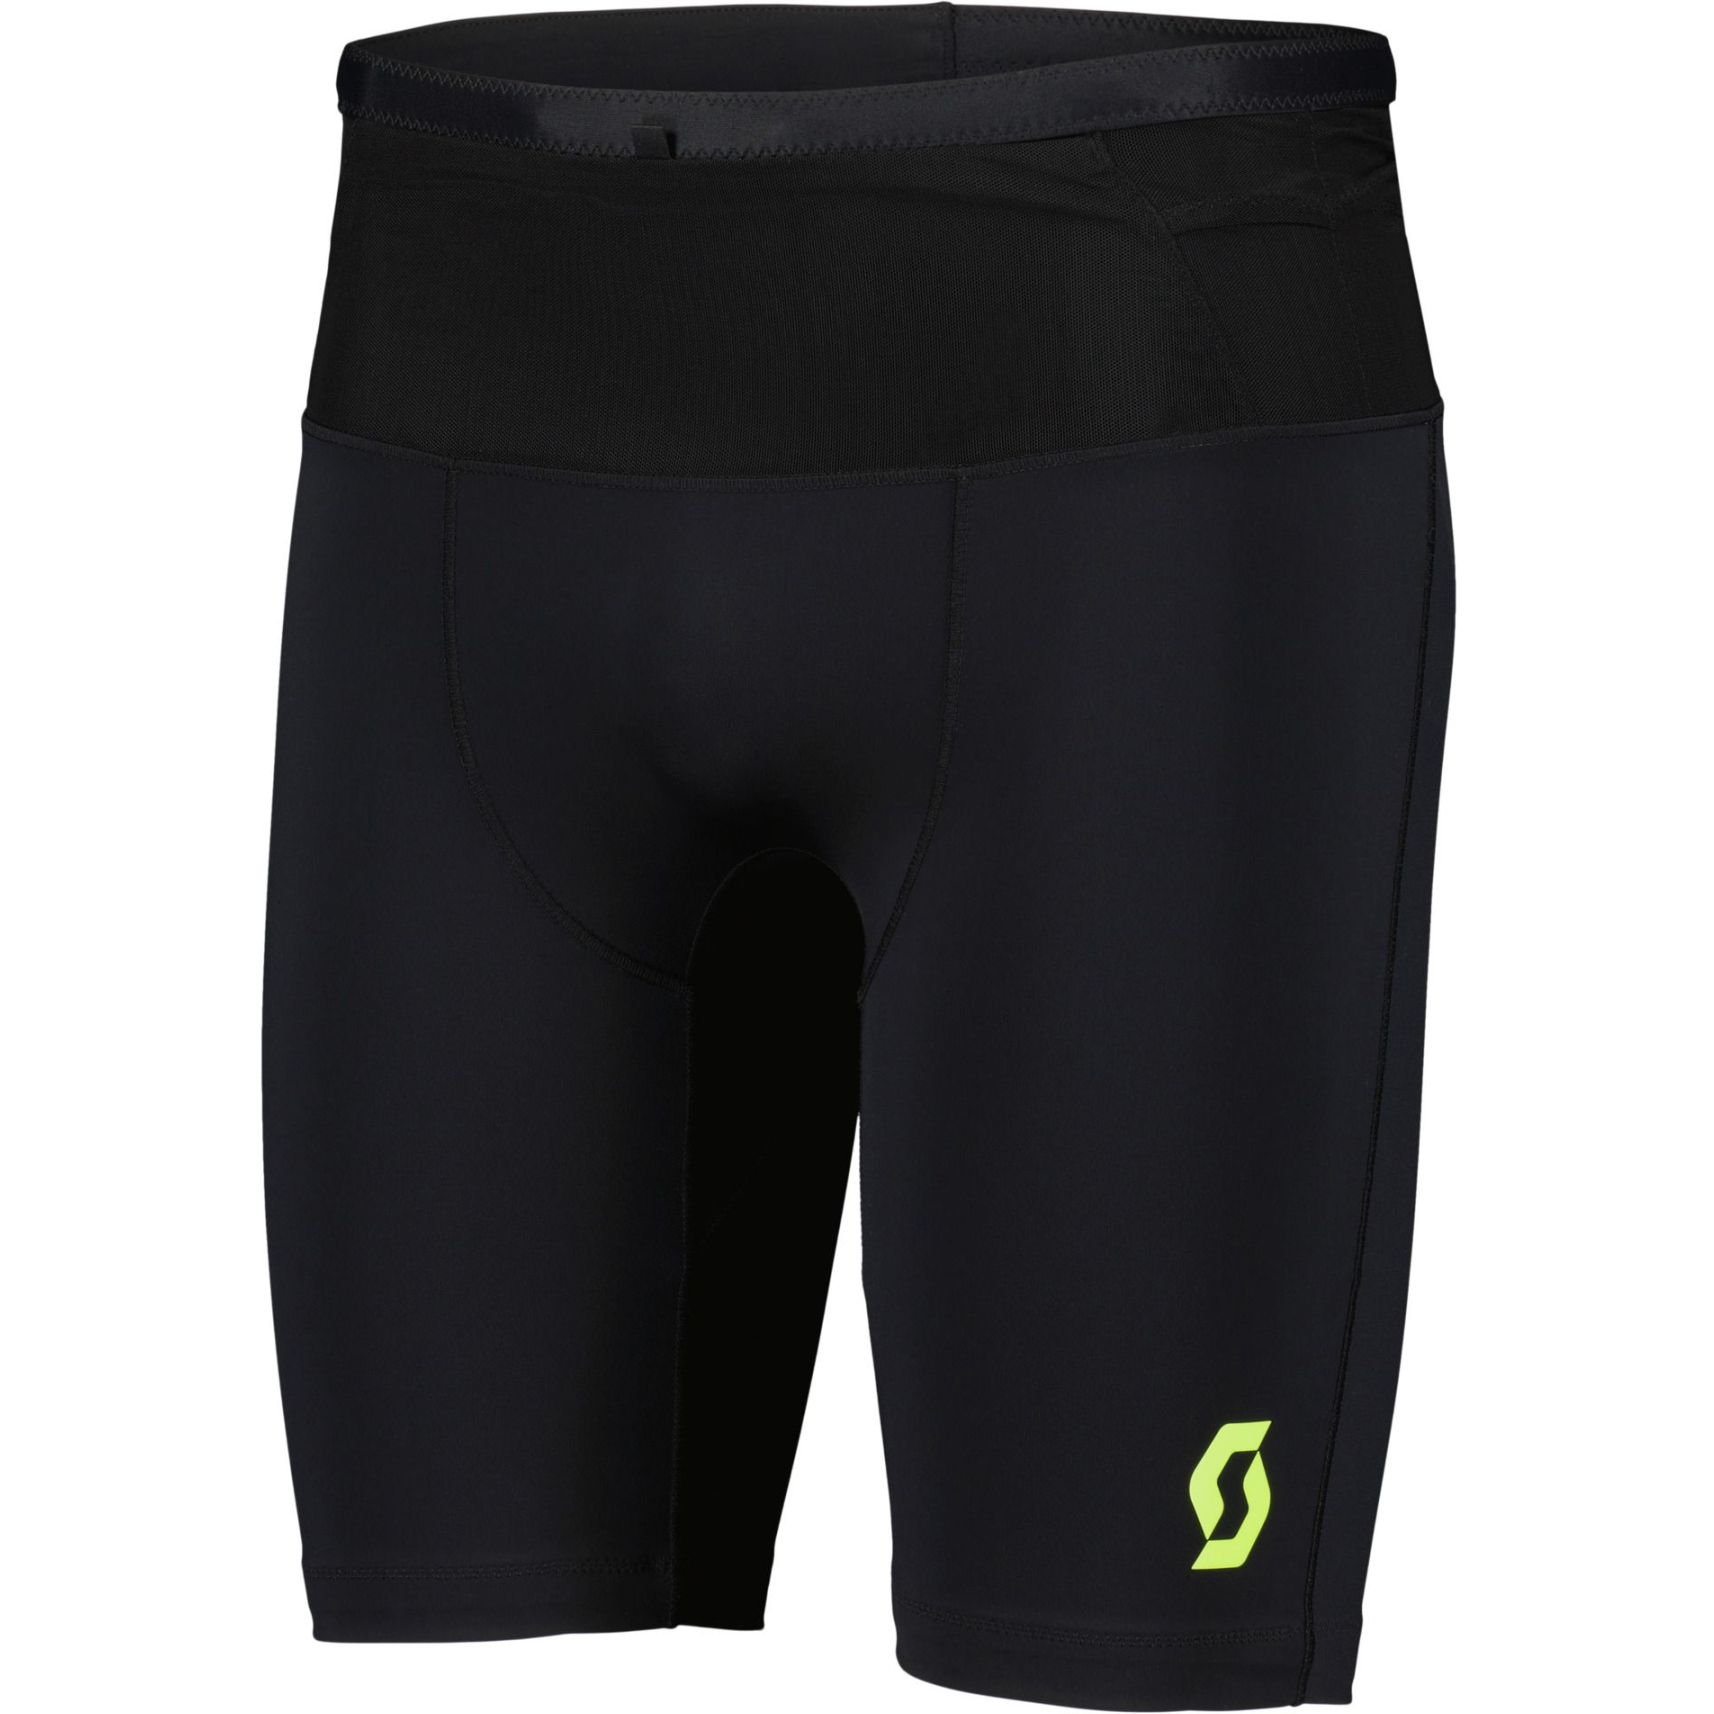 Produktbild von SCOTT RC Run Tight Shorts Herren - schwarz/gelb